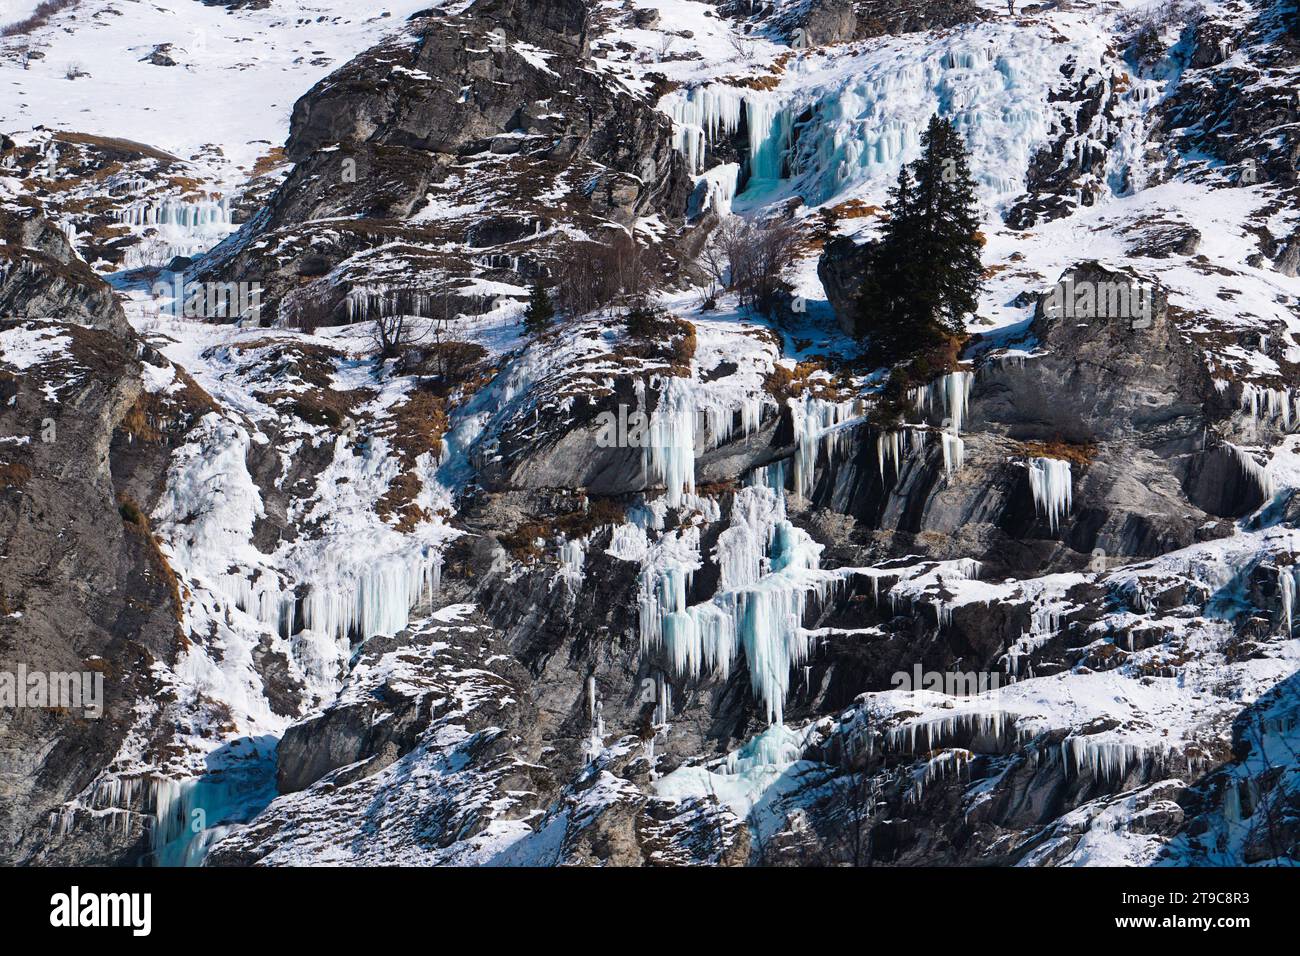 Eine gefrorene Landschaft in den französischen Alpen mit schneebedeckten felsigen Bergen mit markanten Eiszapfen, die ein winterliches Spektakel schaffen. Stockfoto